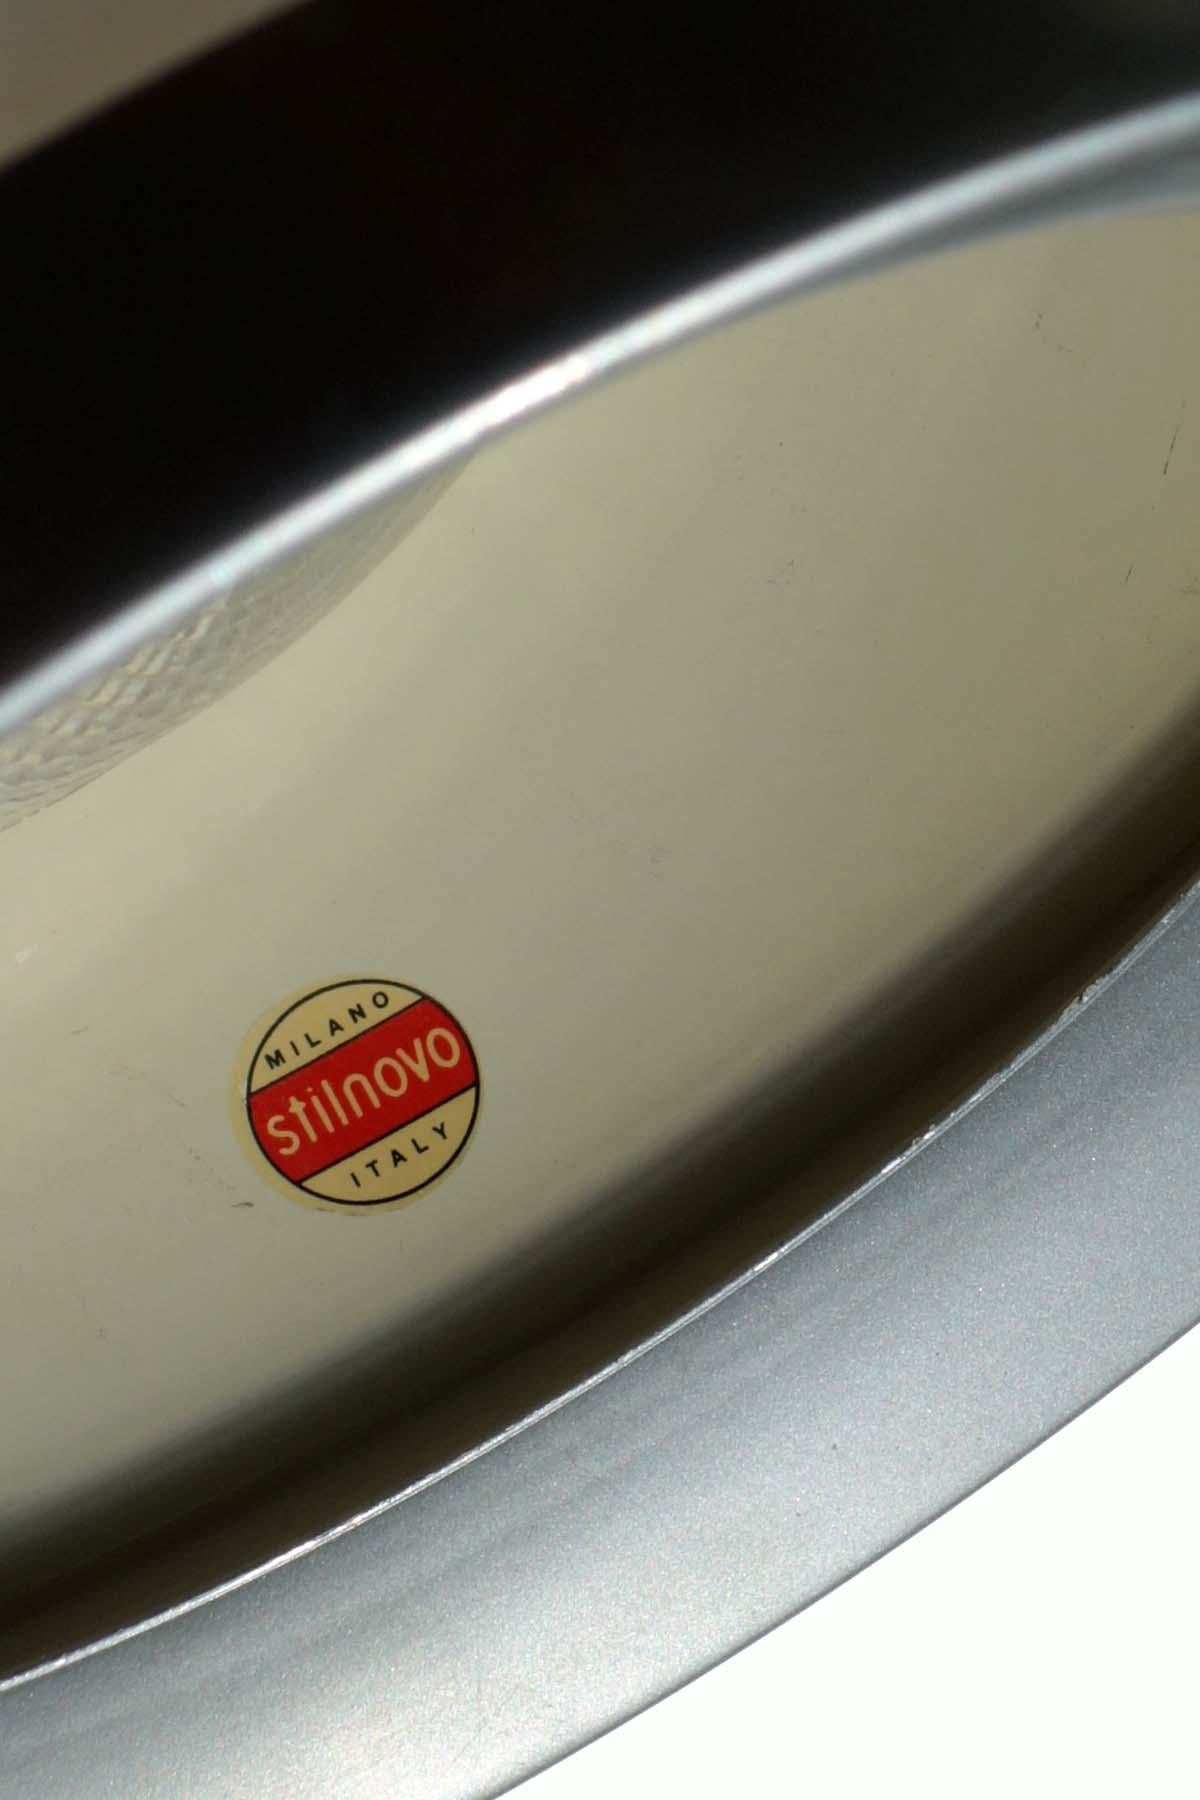 Plafonnier
Stilnovo
Milan, 1950

Métal émaillé blanc
Diffuseur en verre moulé
Détails de l'acier

Étiquette autocollante 